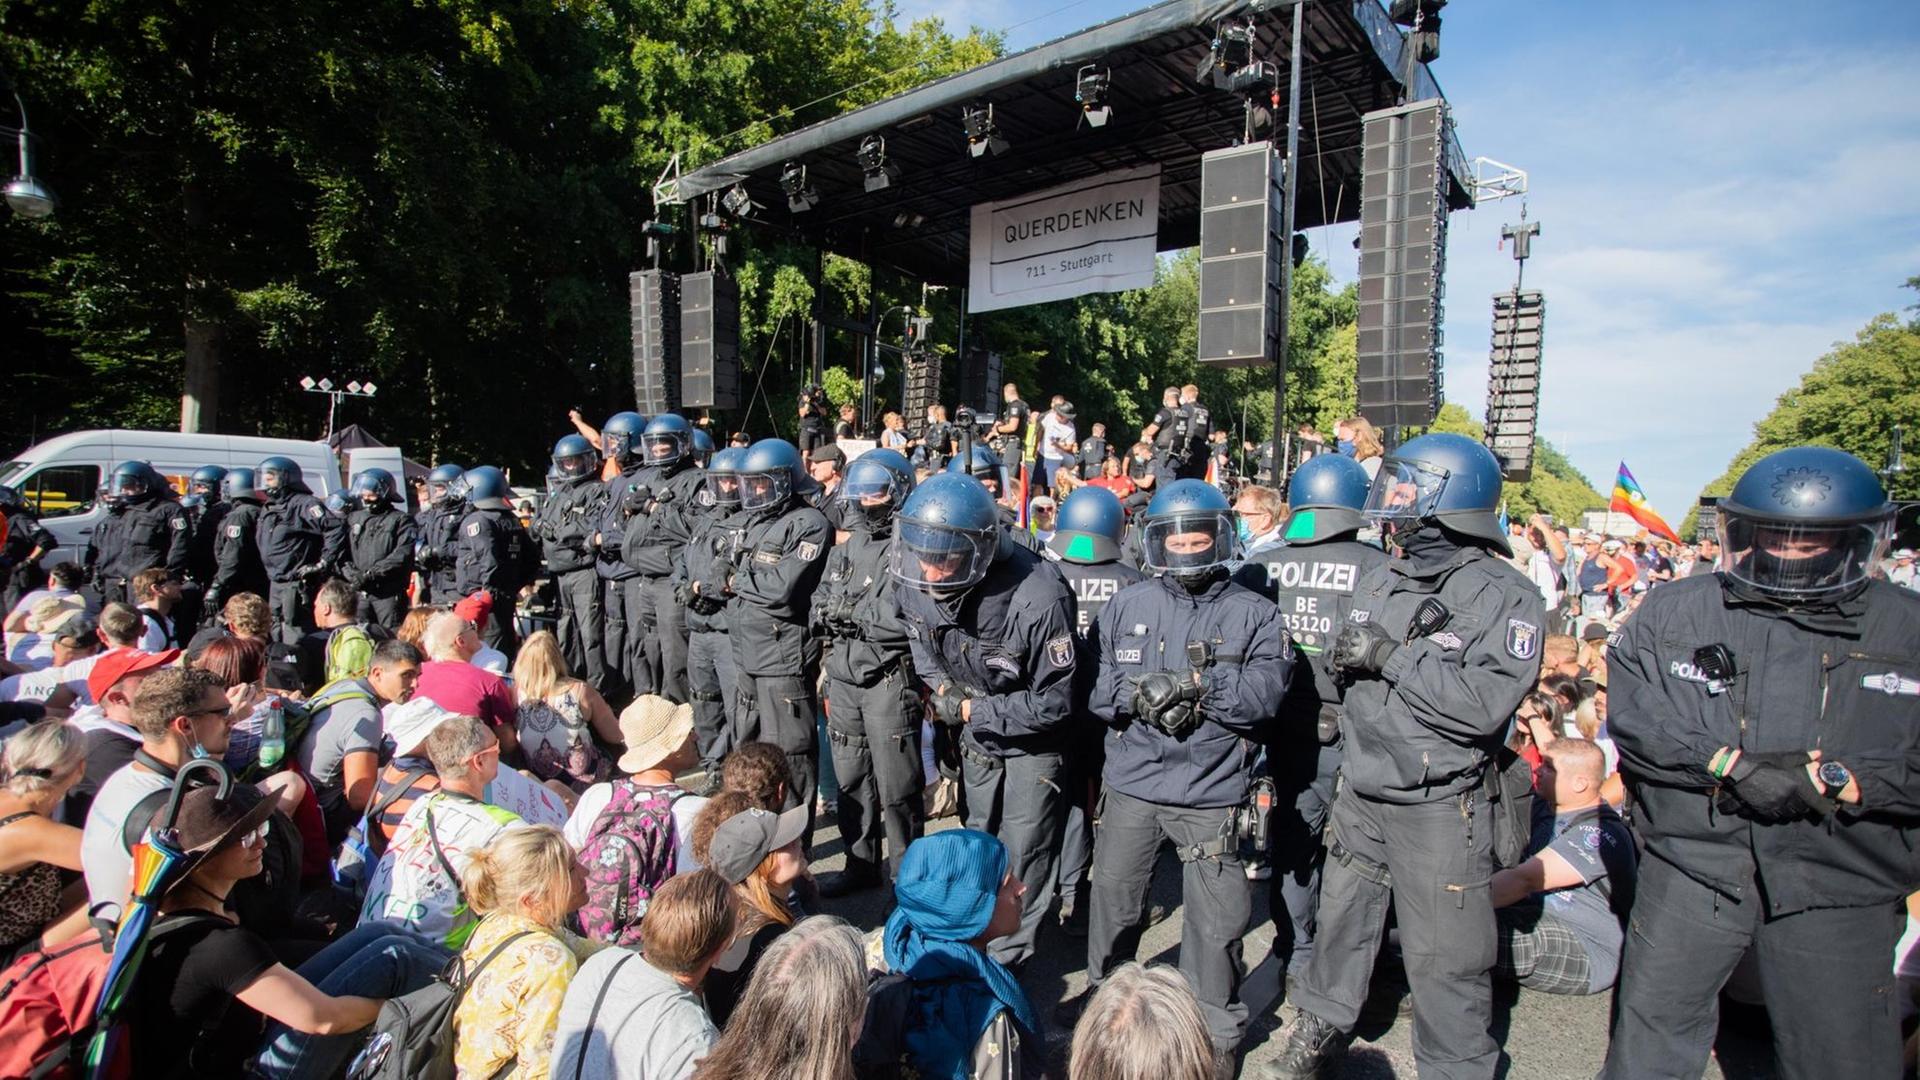 Polizisten stehen bei einer Kundgebung gegen die Corona-Beschränkungen auf der Straße des 17. Juni zwischen Teilnehmern vor einer Bühne.